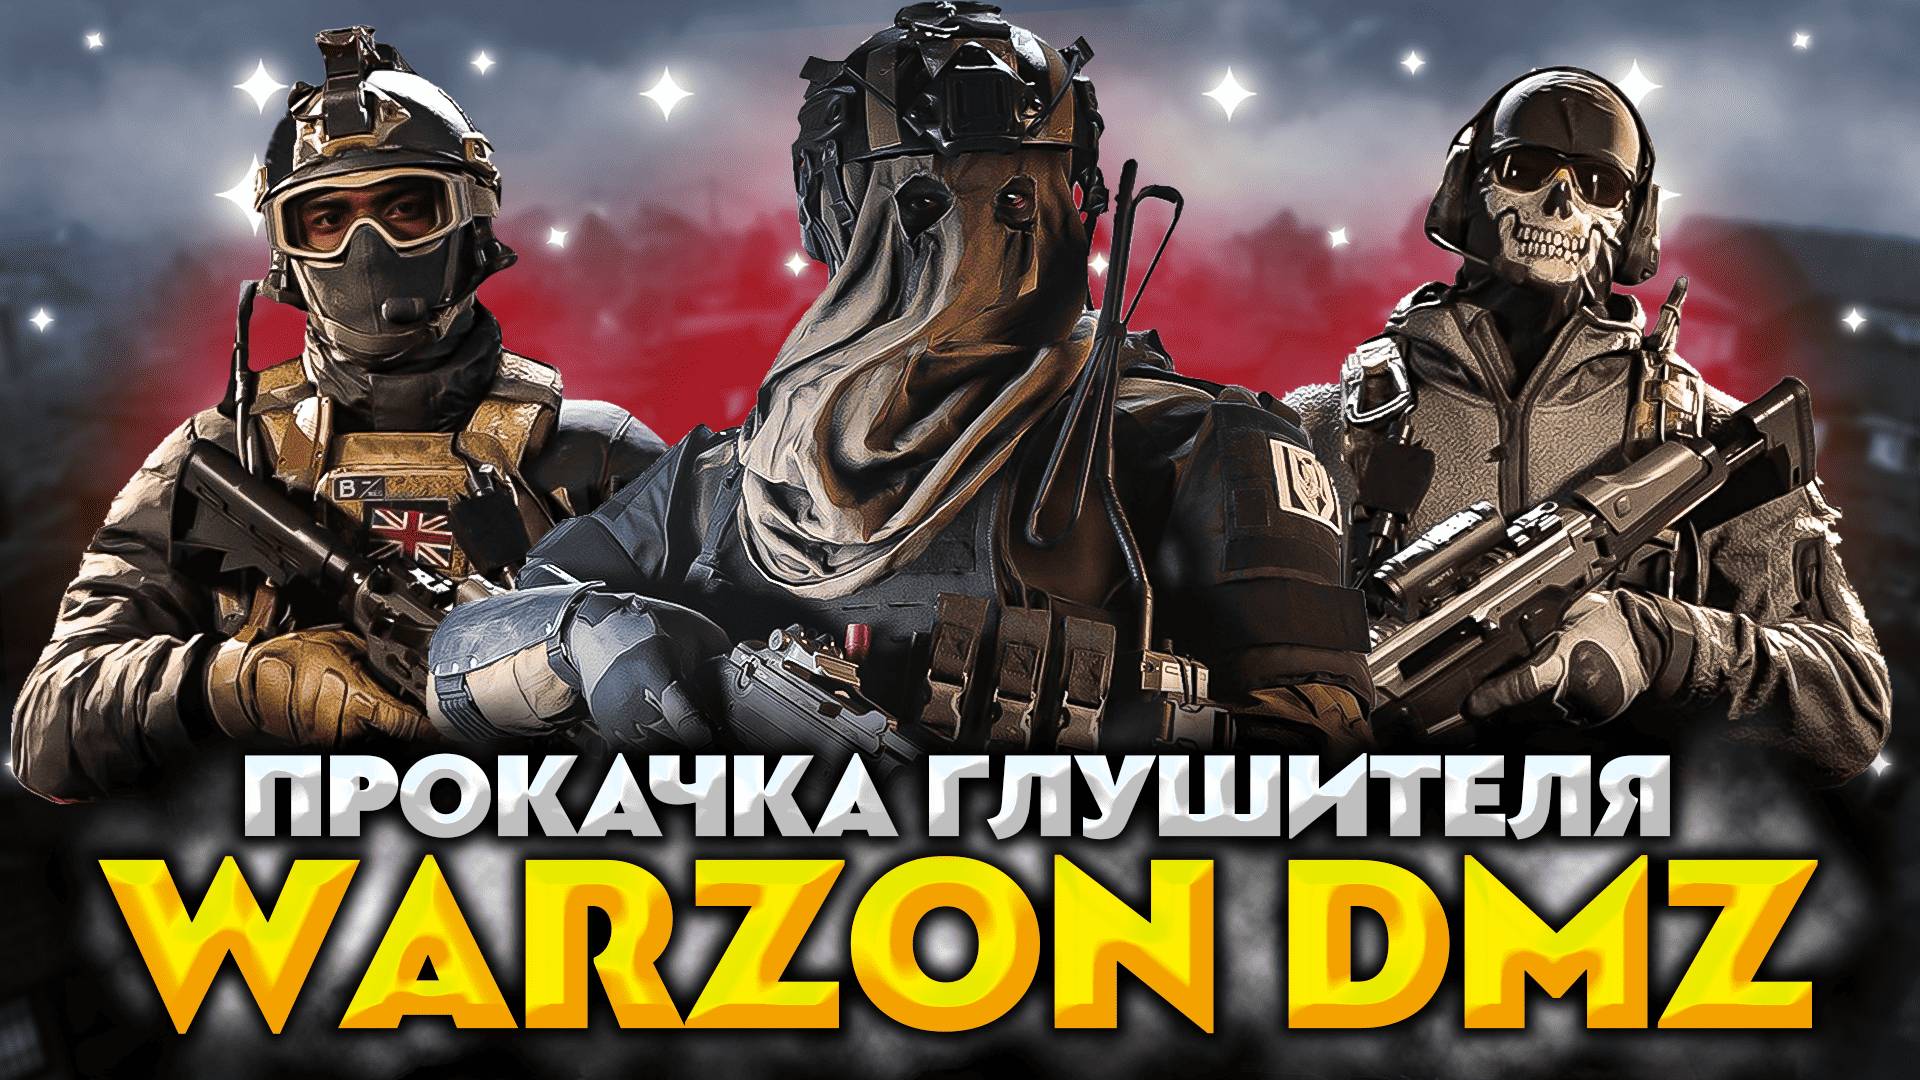 СТРИМ DMZ WARZON 3 💥 ОПЕРАЦИЯ "ГЛУШИТЕЛЬ" 💥 РЕЖИМ НОВИЧОК